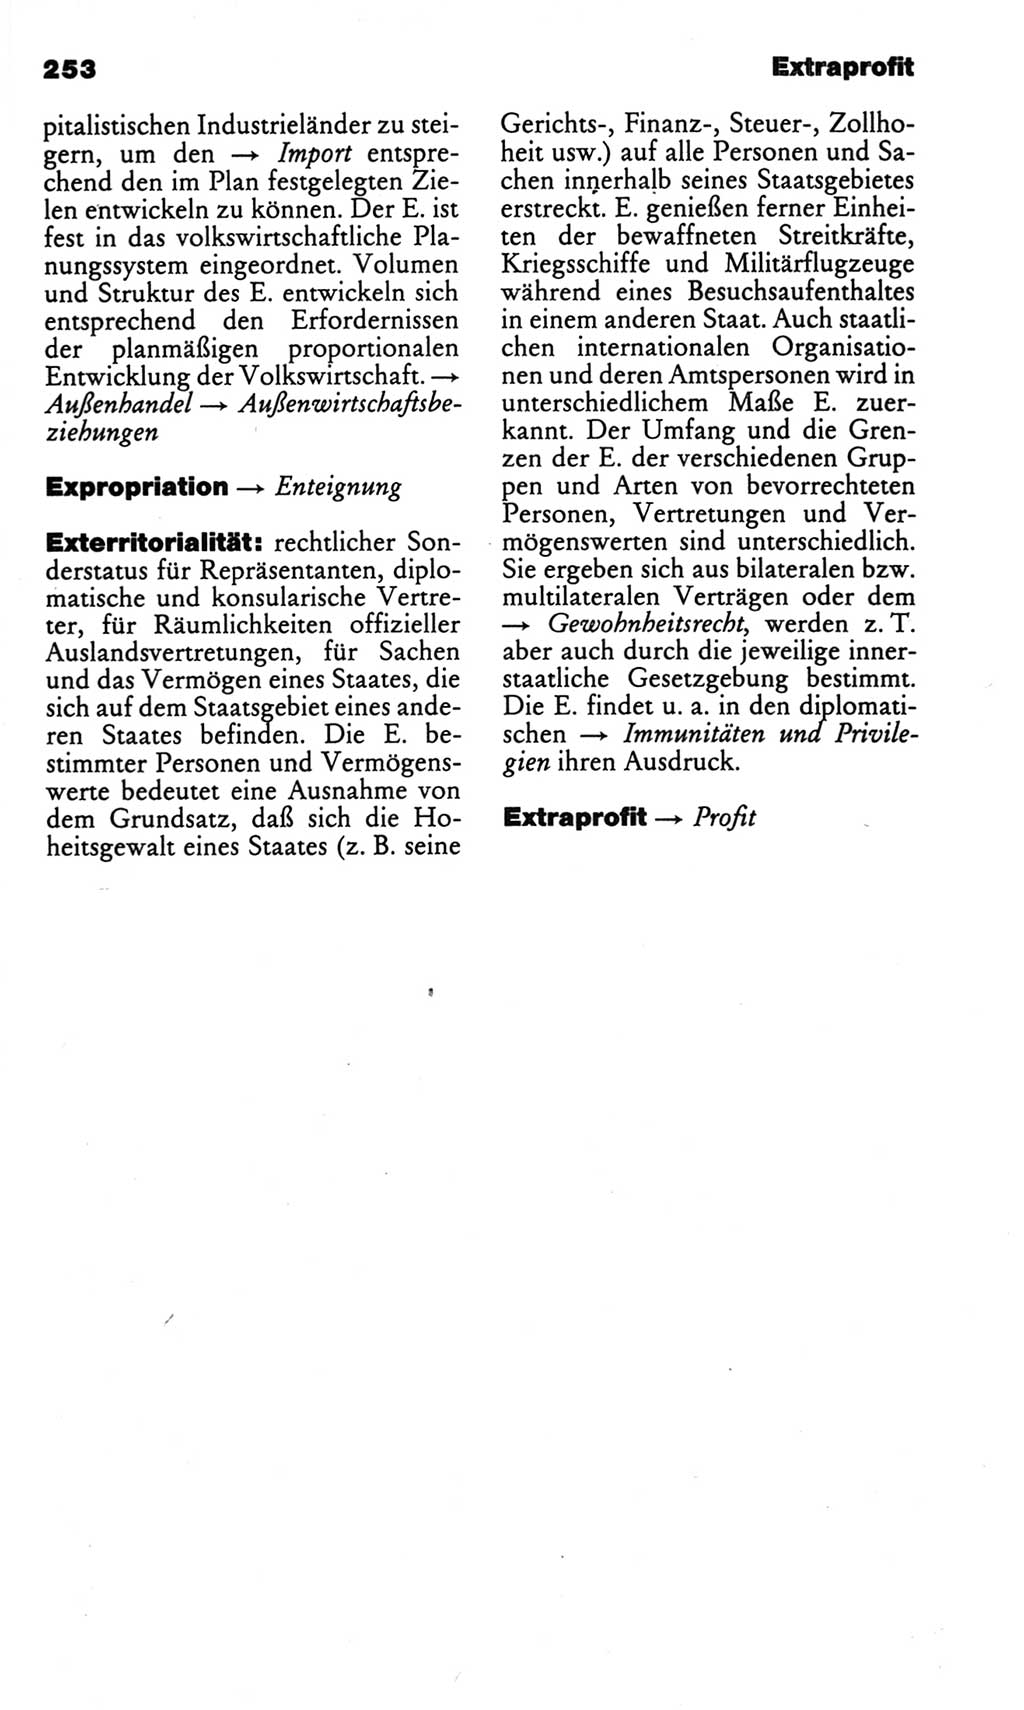 Kleines politisches Wörterbuch [Deutsche Demokratische Republik (DDR)] 1986, Seite 253 (Kl. pol. Wb. DDR 1986, S. 253)